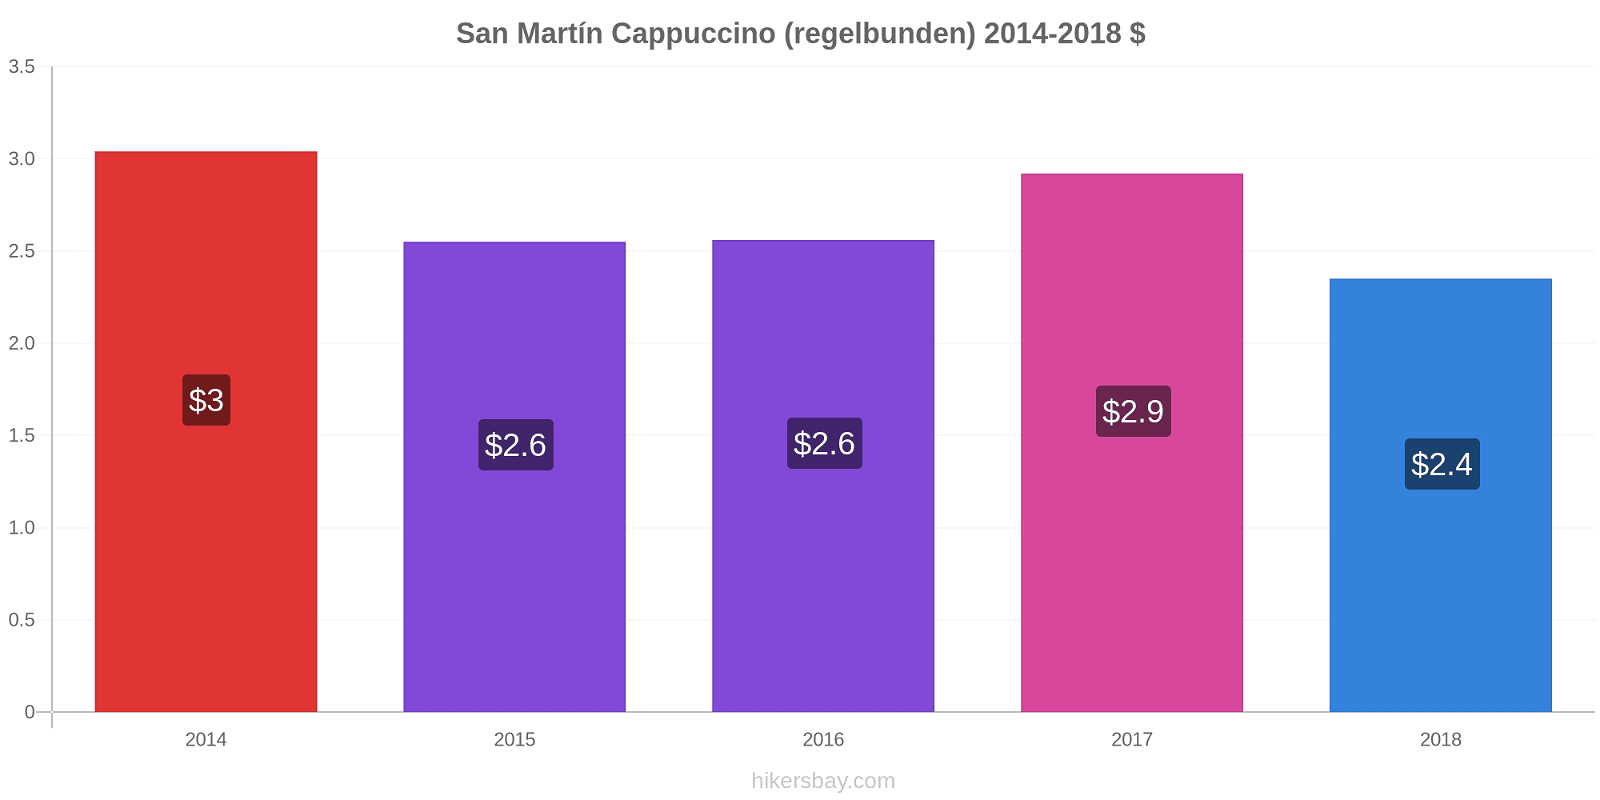 San Martín prisförändringar Cappuccino (regelbunden) hikersbay.com